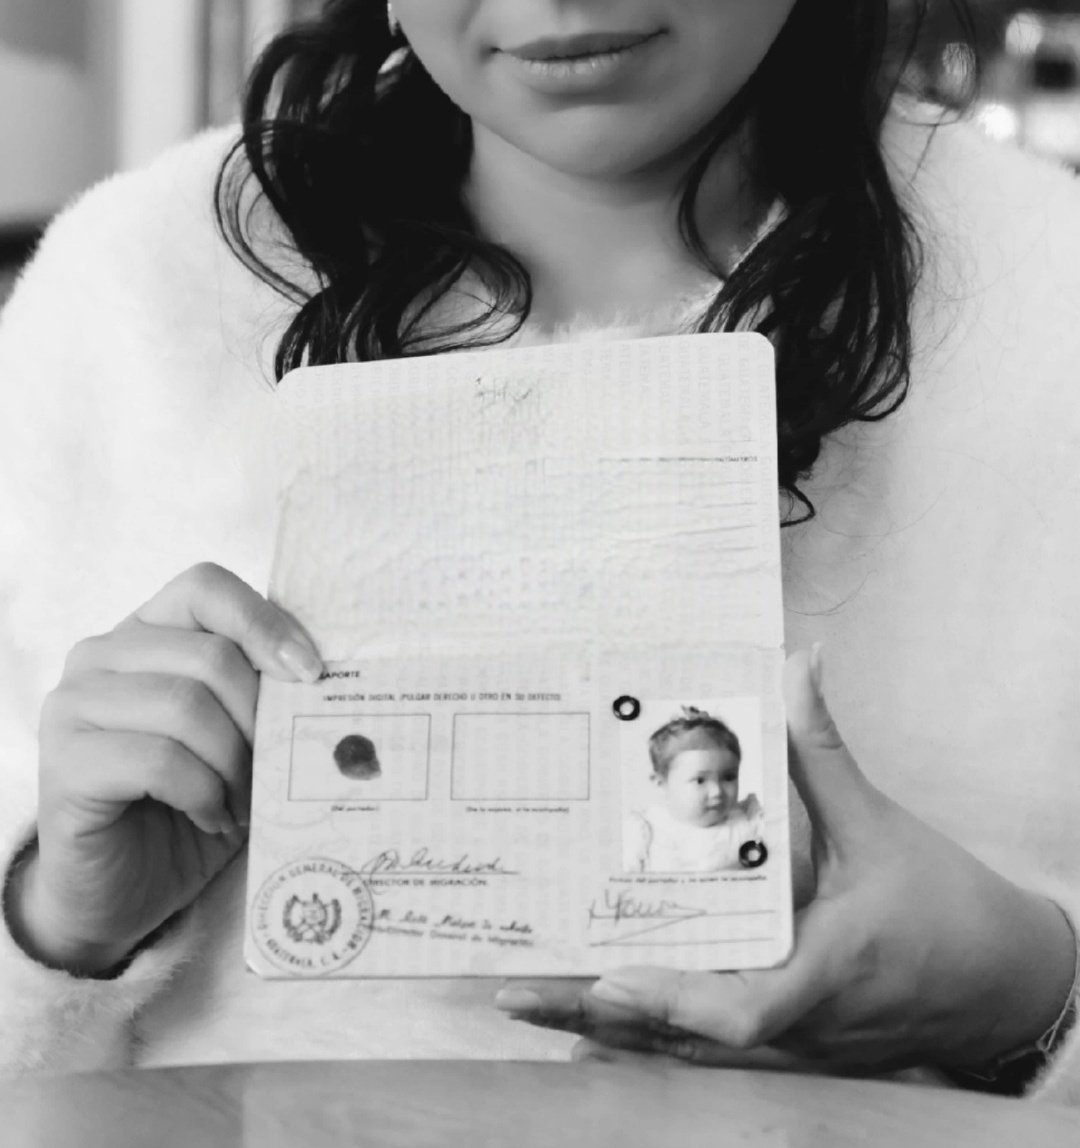 🤚🏽🖤 A 11 mois j'ai 'signé' mon passeport avec de l'encre sur mon 'petit doigt de bébé' pour dire que je voyageais 'sola ' #ineptie #traficenfants #adoption #illégale #conflitarme #Guatemala 
Maintenant je signe, parfois
. . . des livres 🖋 ❤️ #resilience